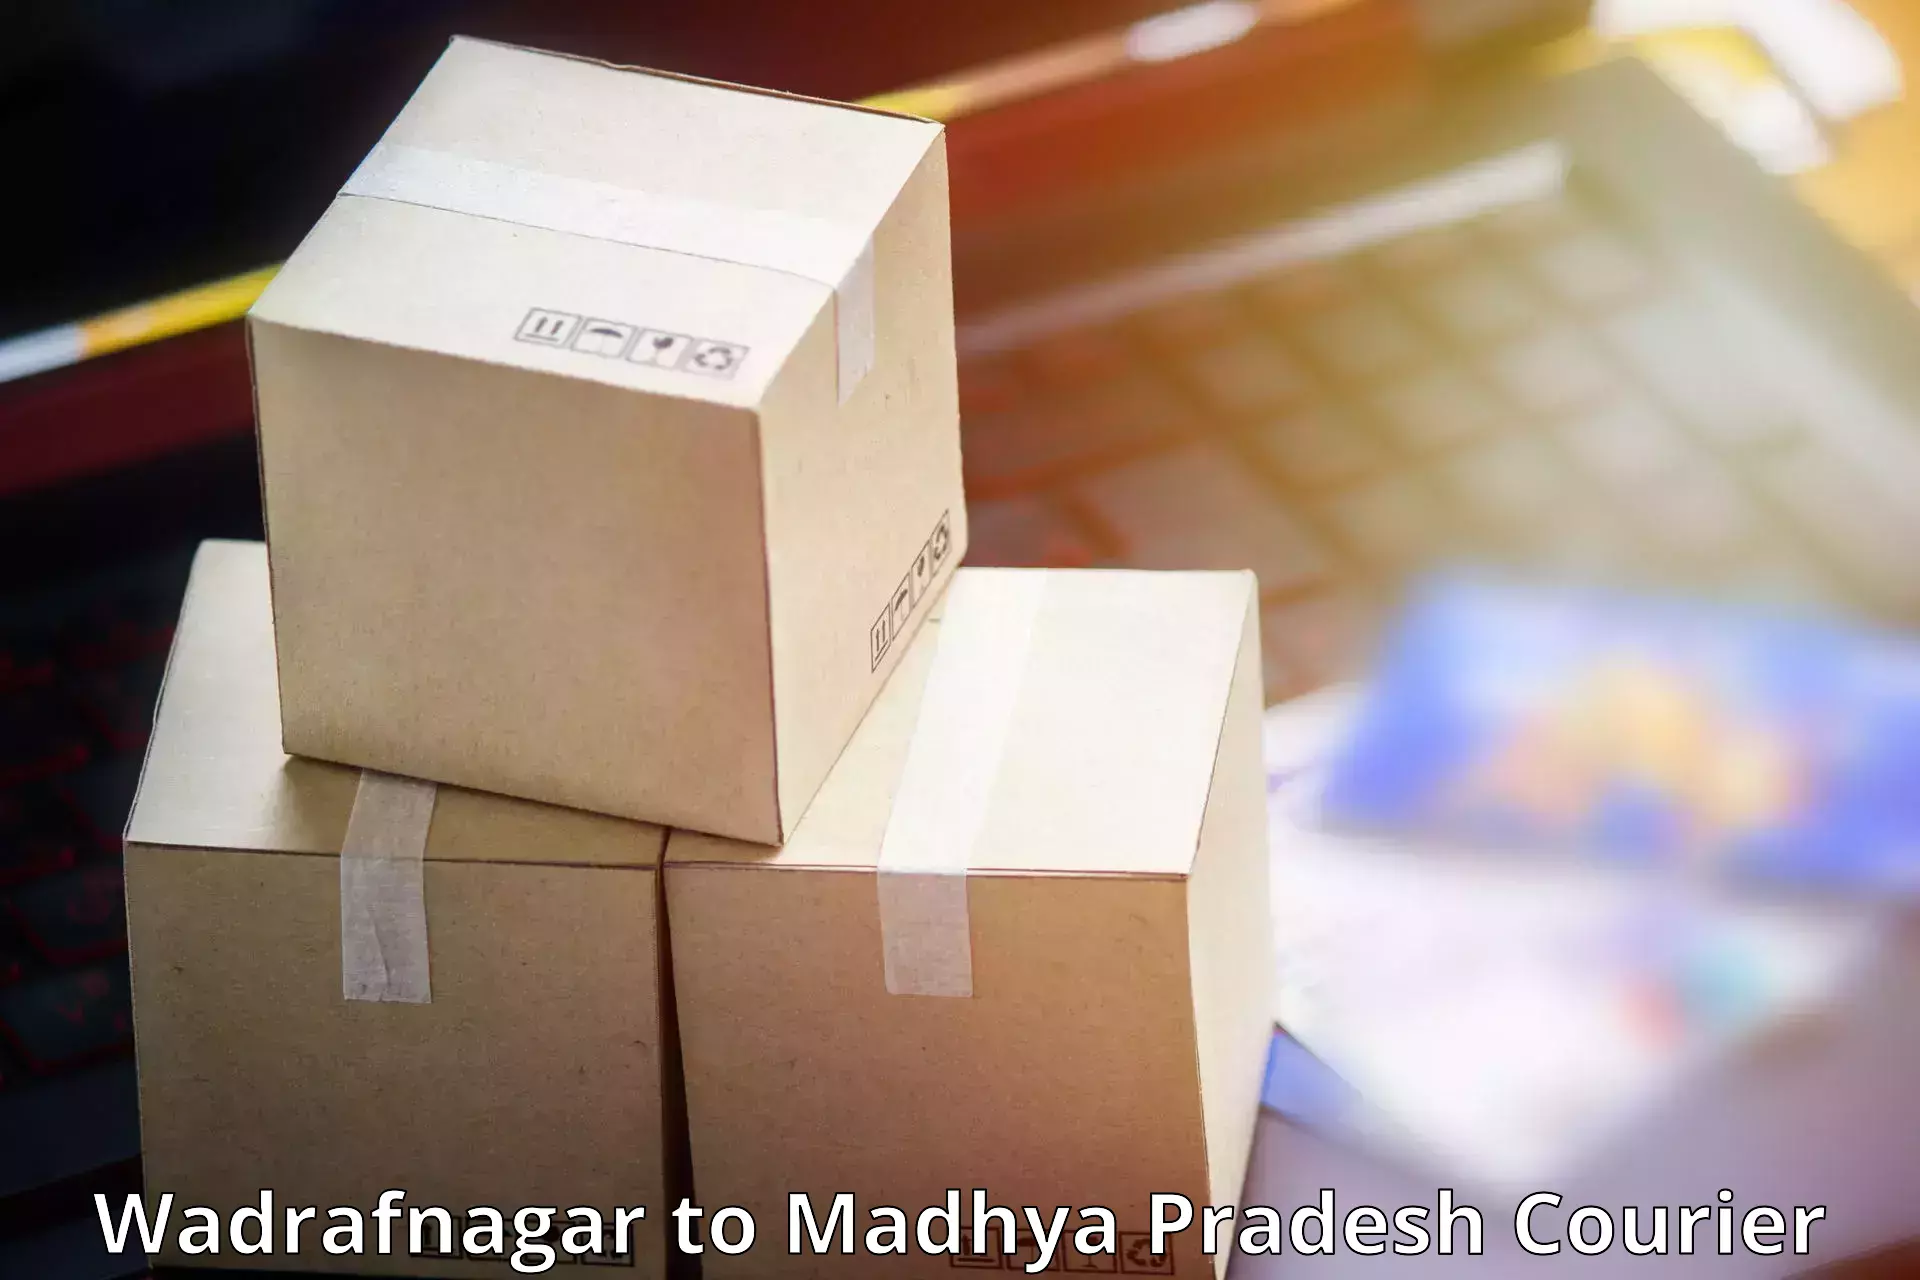 Logistics efficiency in Wadrafnagar to Gotegaon